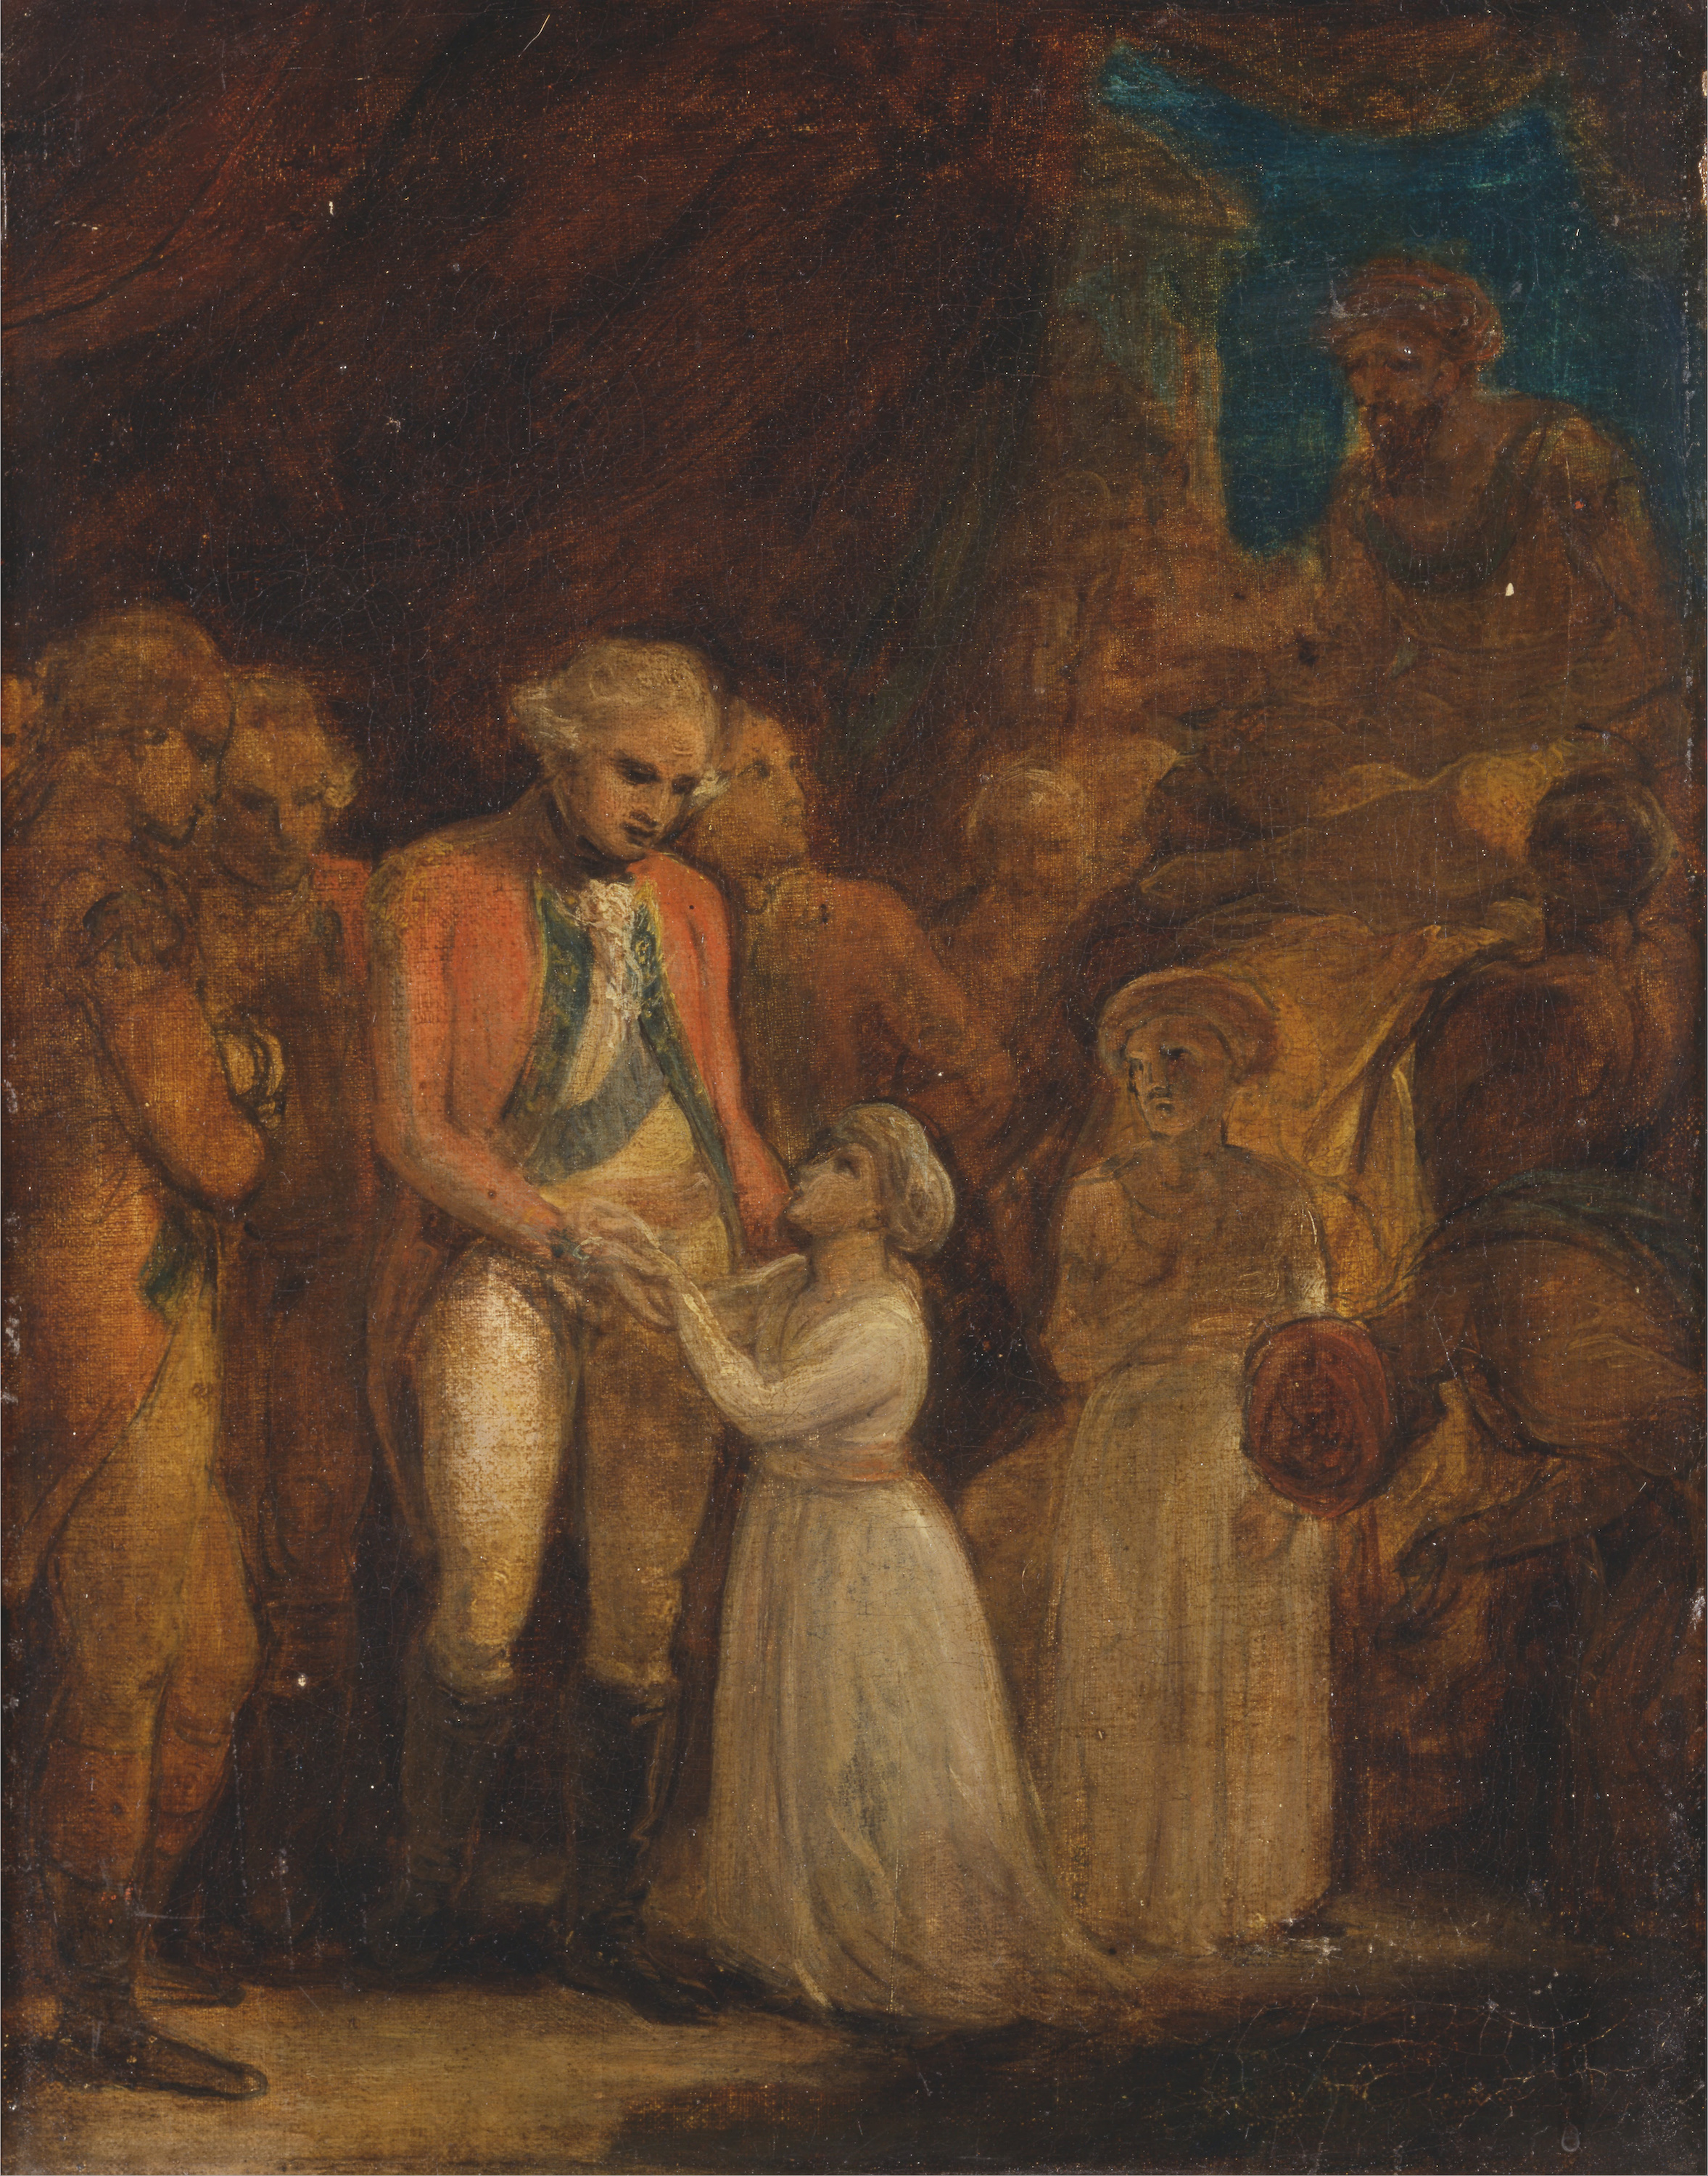 Os Dois Filhos de Tipu Sahib, Sultão de Maiçor, Sendo Entregados como Reféns ao General Cornwallis by Robert Smirke - 1792 - 451 x 356 cm 